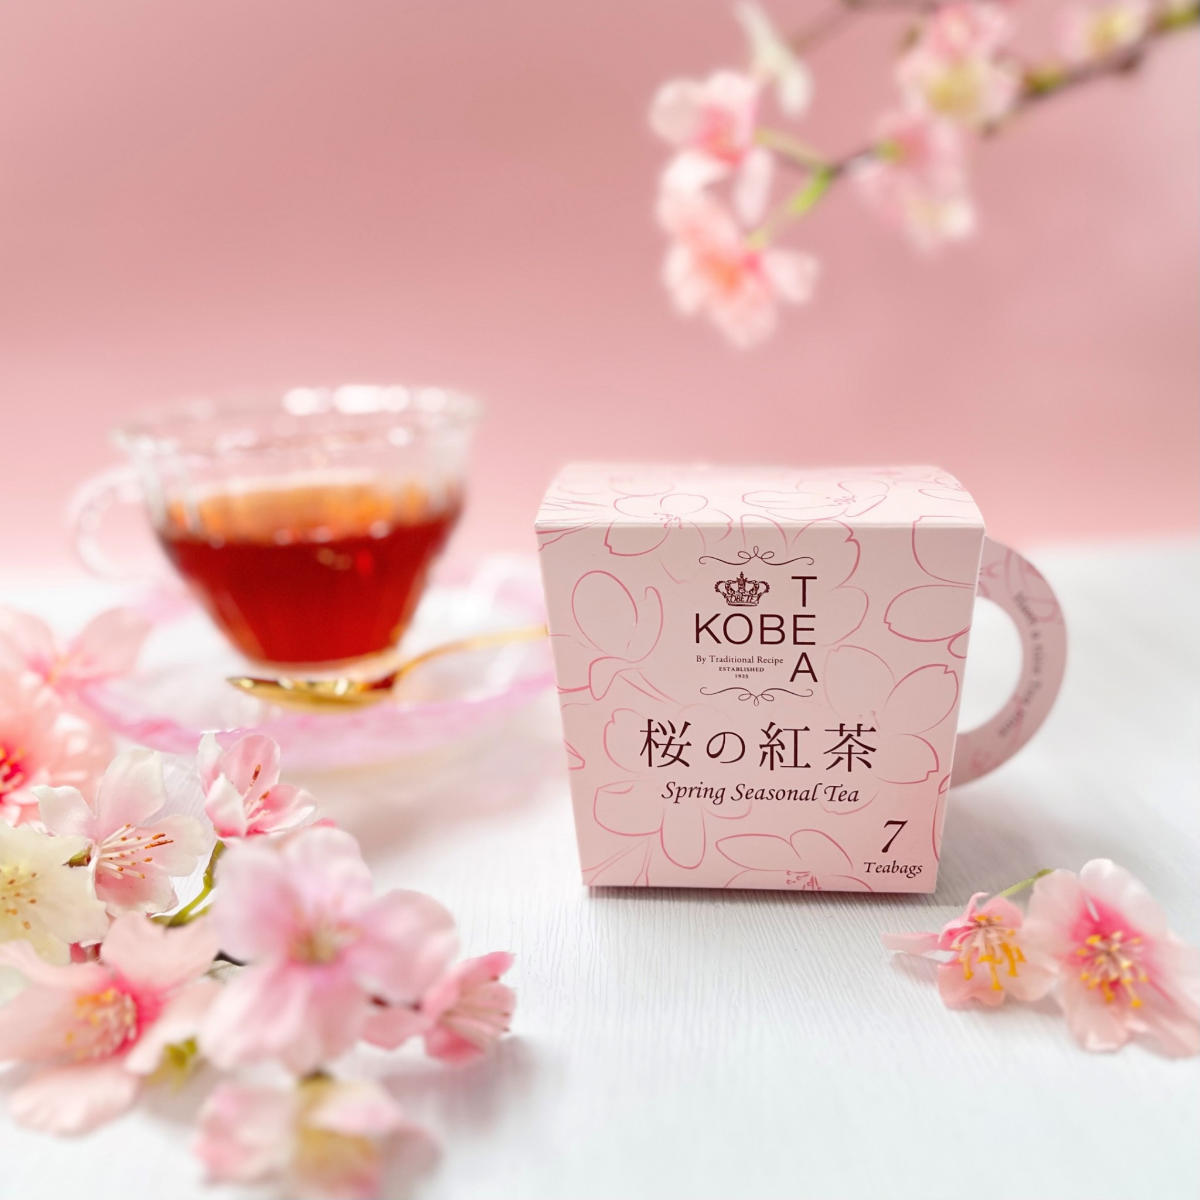 神戸紅茶が季節限定『桜の紅茶』販売開始 [画像]